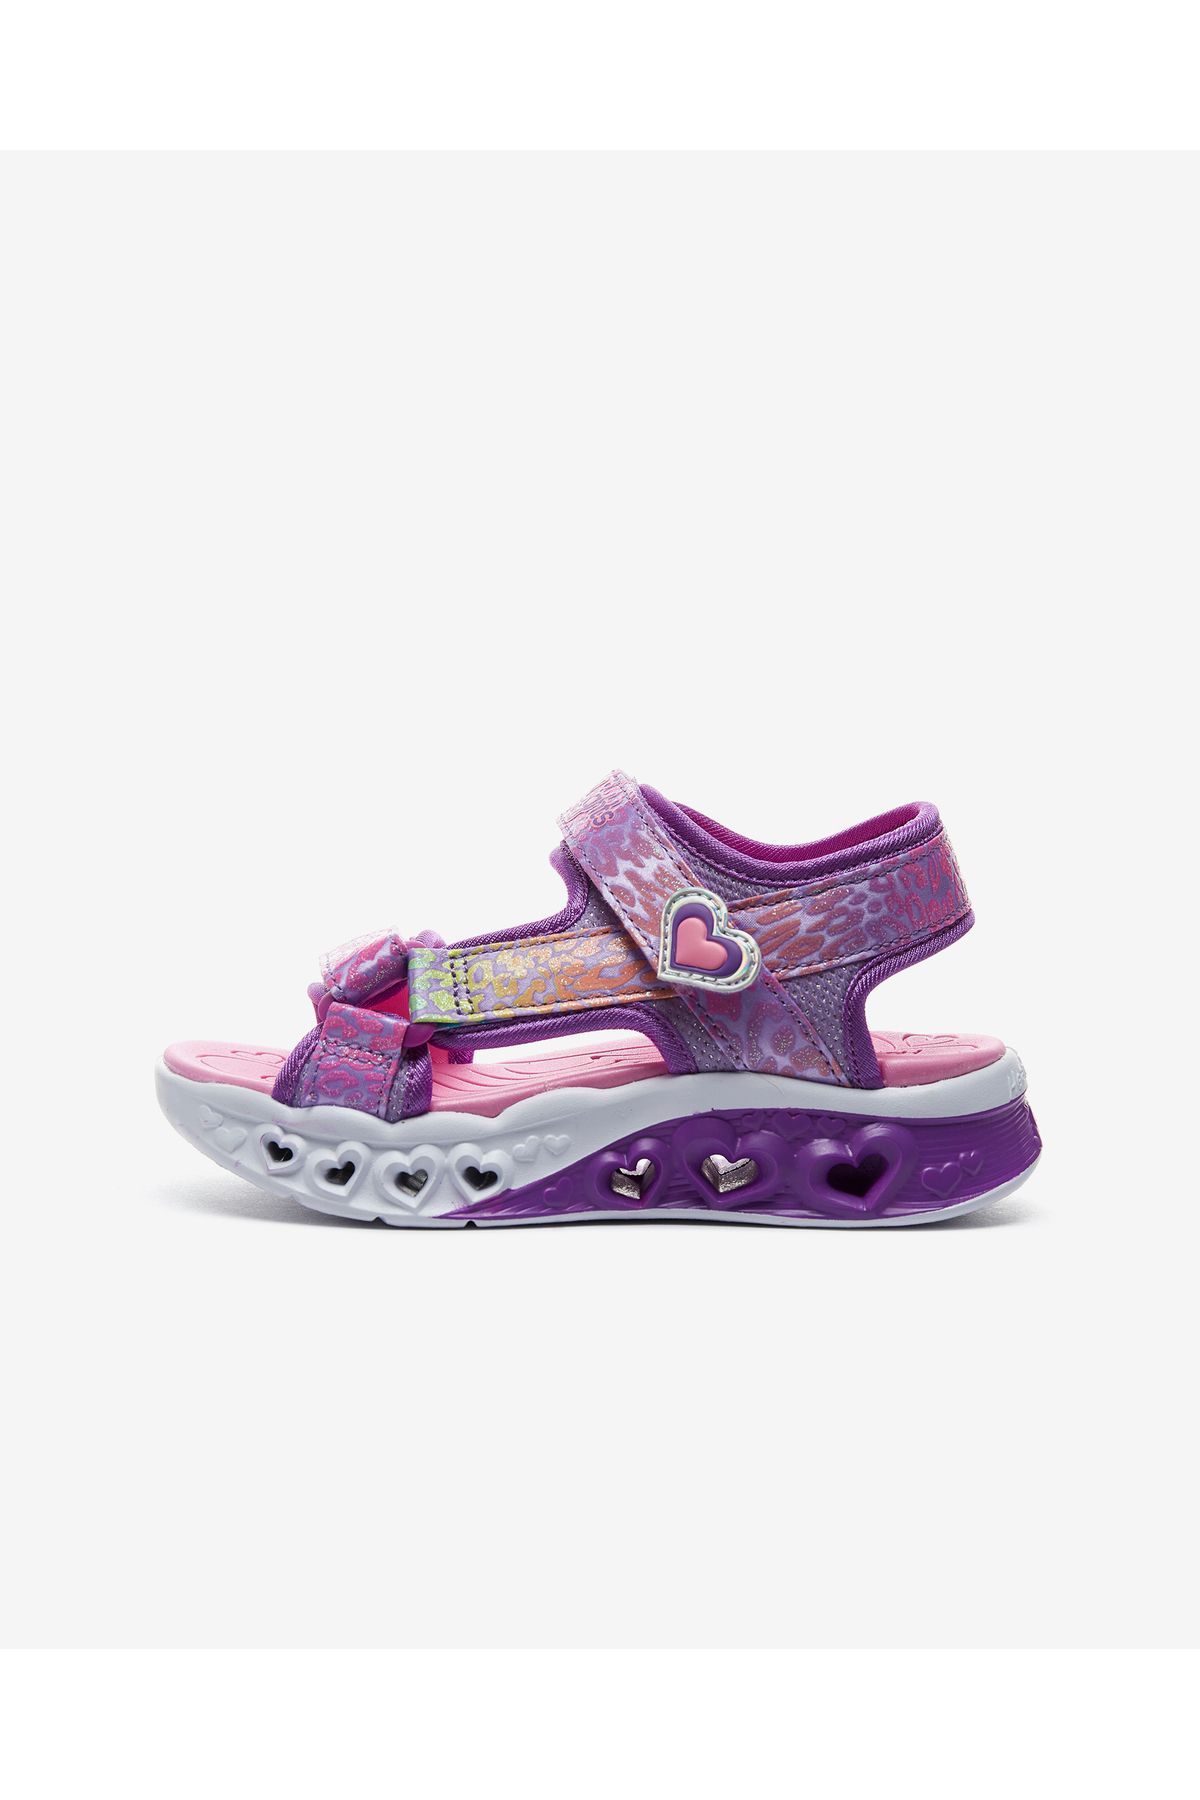 Skechers Flutter Hearts Sandal Büyük Kız Çocuk Mor Işıklı Sandalet 302967l Lvmt